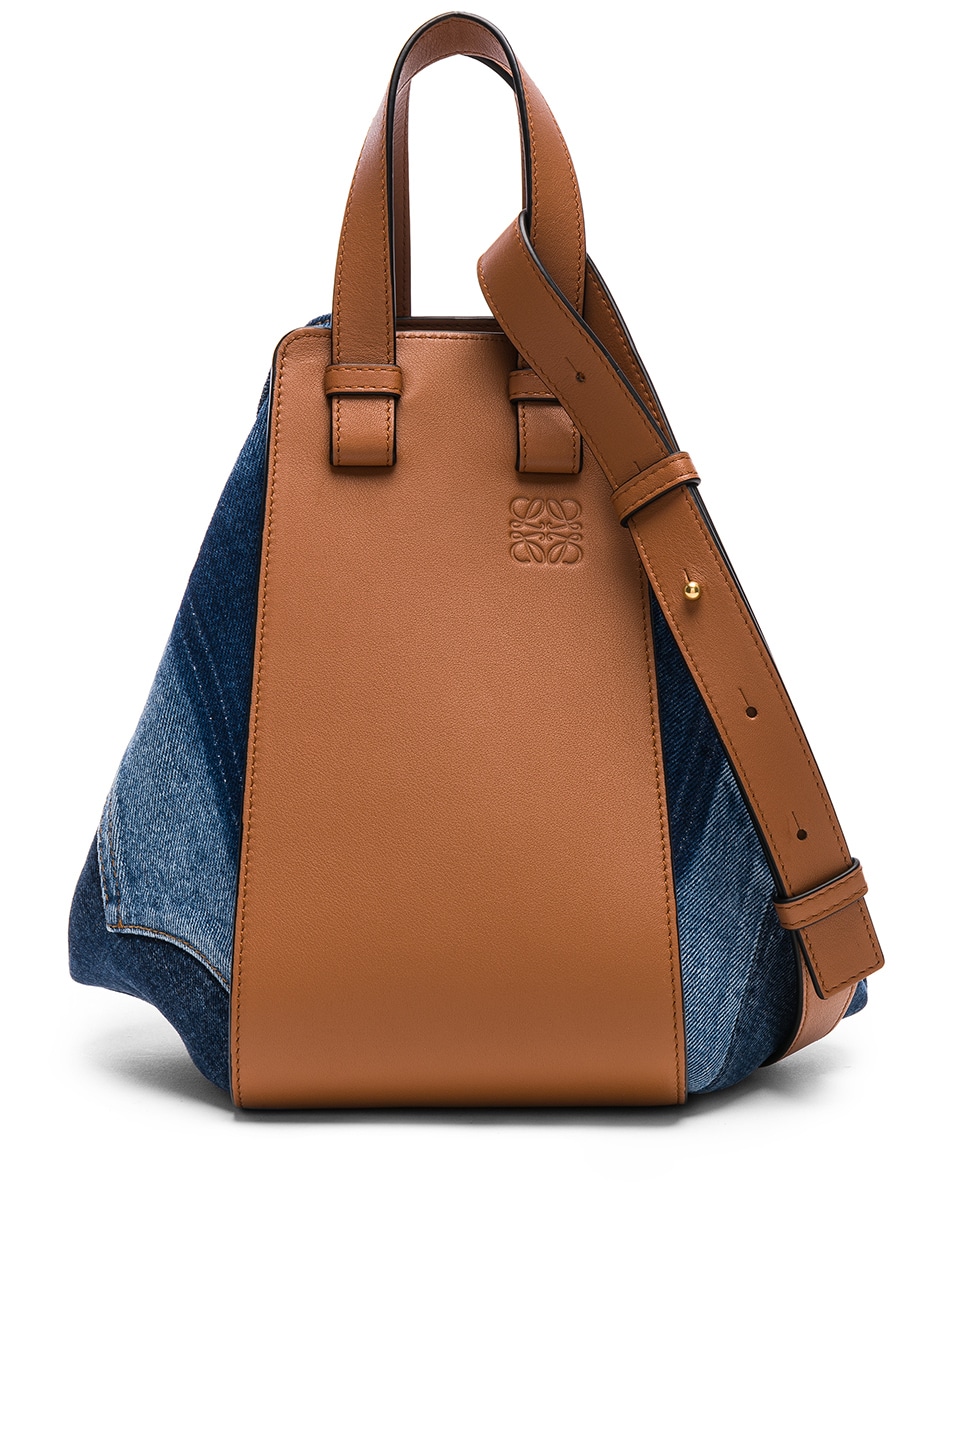 Image 1 of Loewe Hammock Small Bag in Multi-Tone Denim & Tan